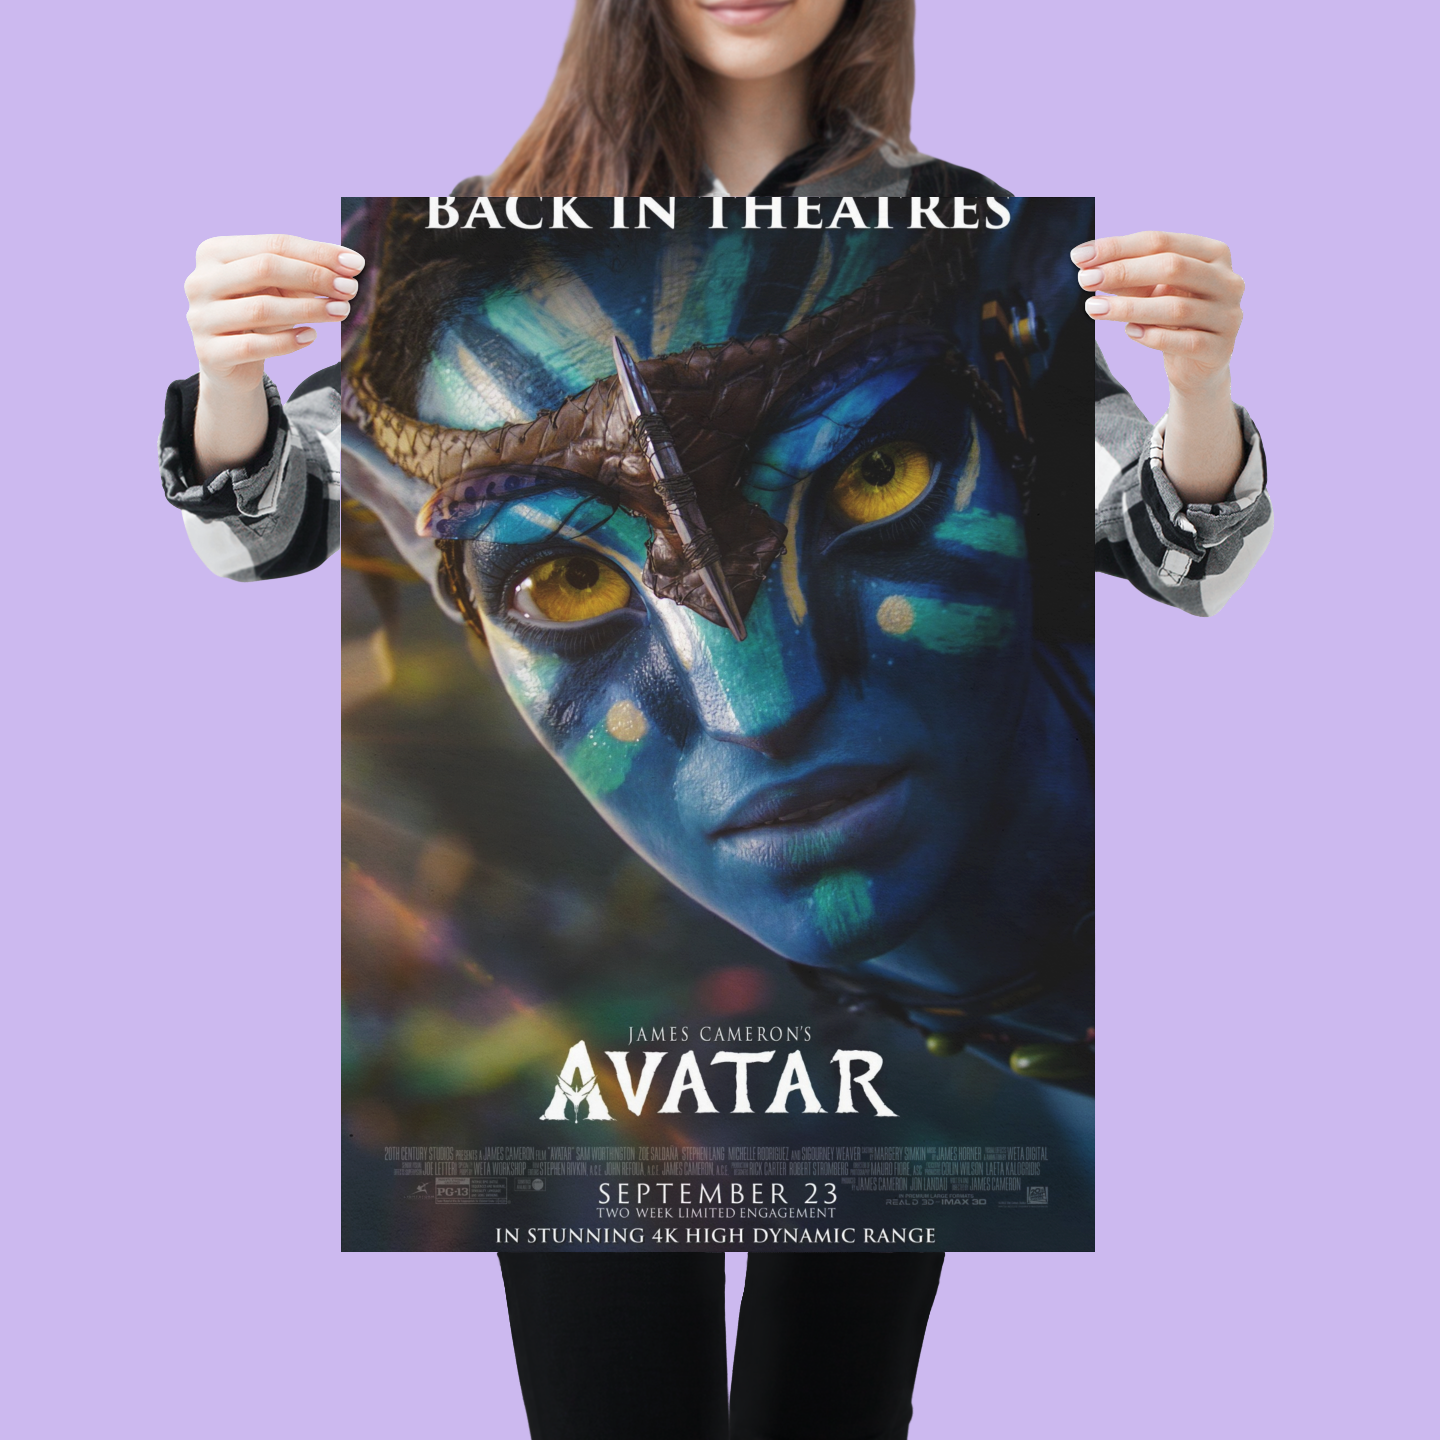 Poster phim Avatar với Sam Worthington và Zoe Saldana mang tới cho khán giả một thế giới tưởng tượng đầy màu sắc, kỳ bí và kịch tính. Với chất lượng hình ảnh hoàn hảo, đây là tác phẩm khó có thể quên đối với những ai đã từng xem.